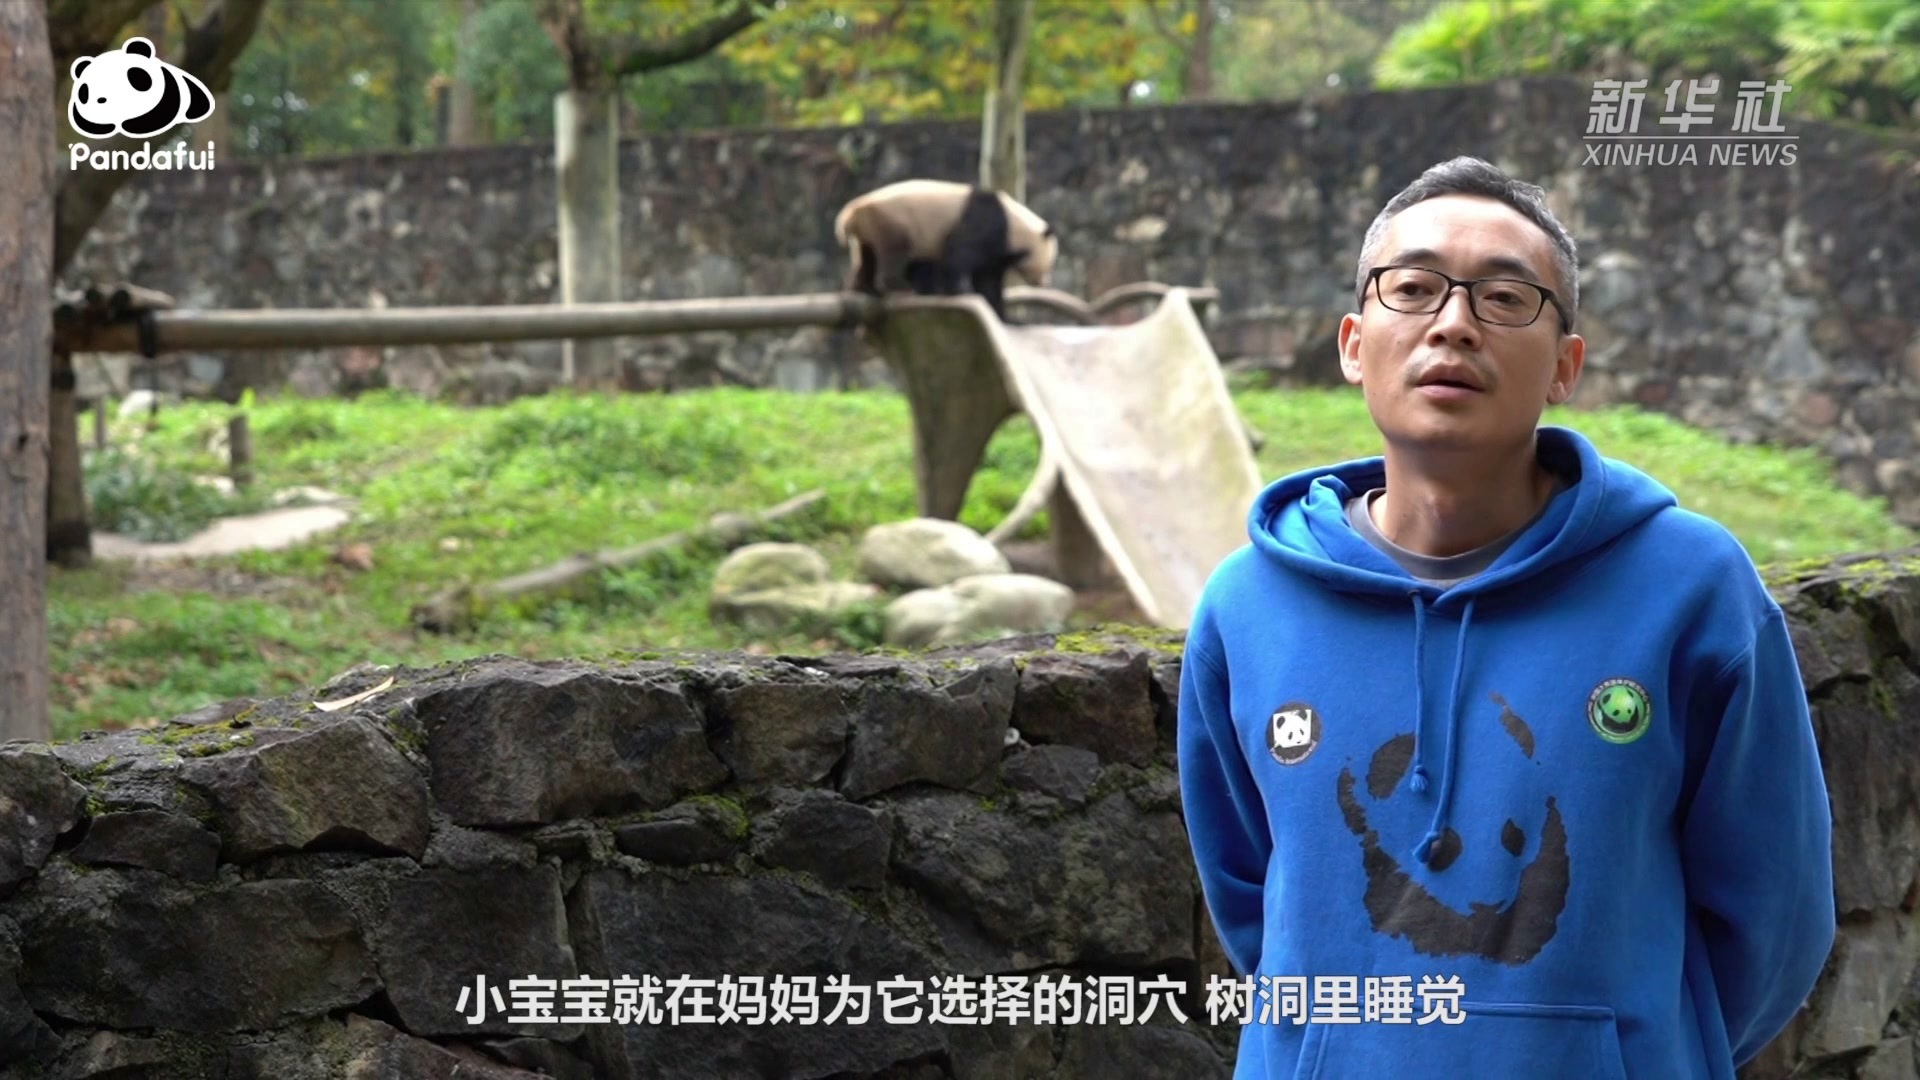 熊猫 红熊猫 猫熊 火狐狸 小熊猫 捕食 哺乳动物 喜马拉雅山图片下载 - 觅知网